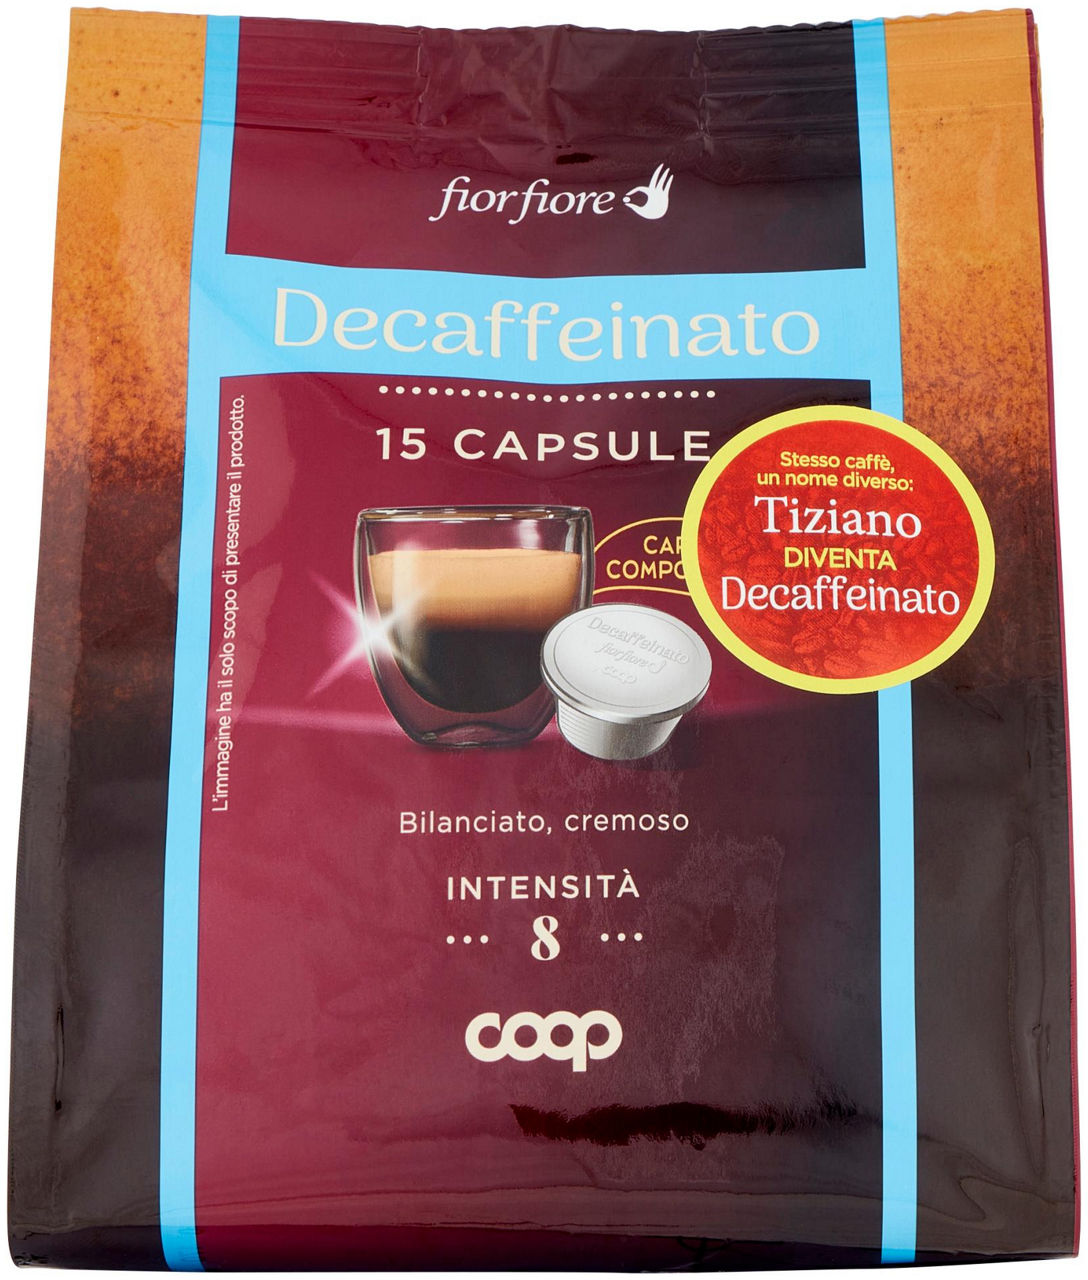 CAFFE' DECAFFEINATO IN CAPSULE COMPOSTABIL "TIZIANO" FIOR FIORE COOP PZ 15 G 95 - 0